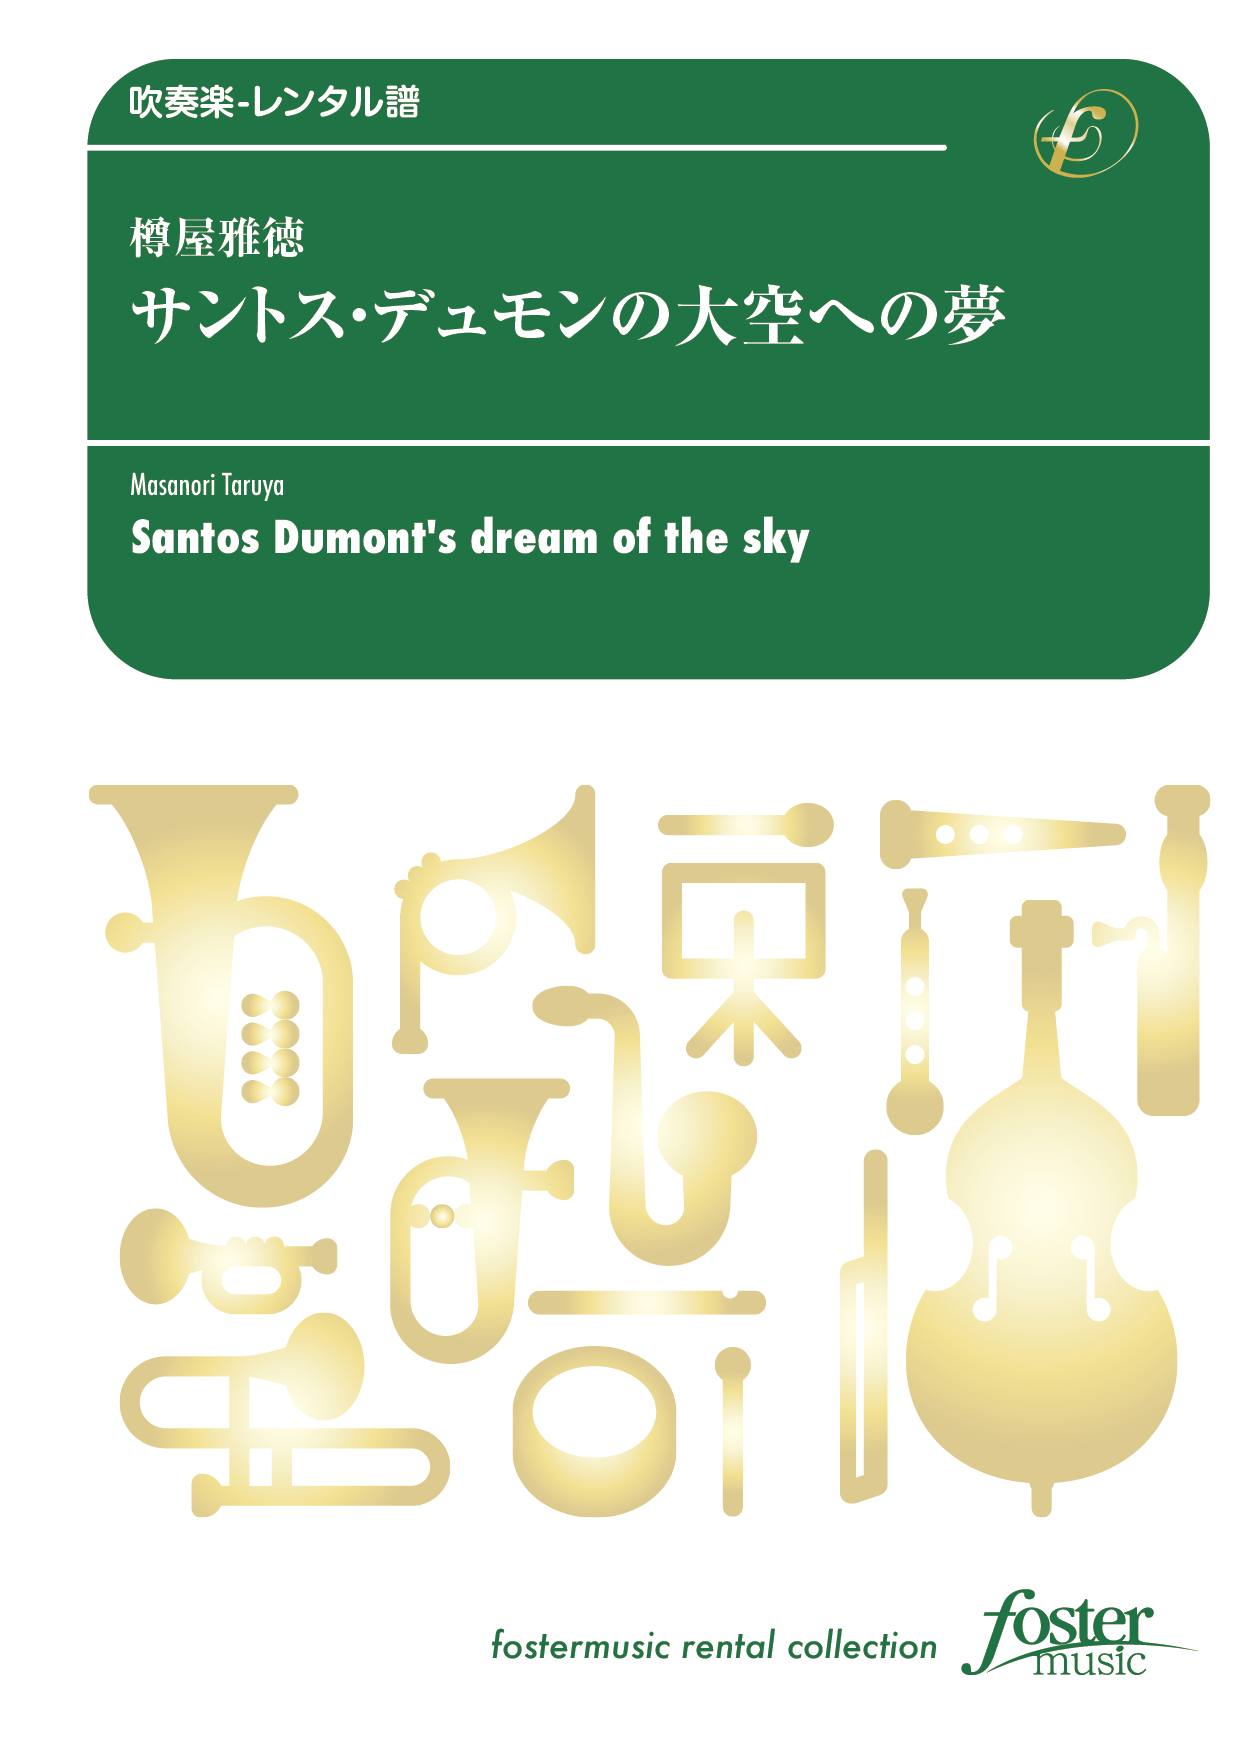 サントス・デュモンの大空への夢：樽屋雅徳 [吹奏楽中編成] - フォスターミュージック